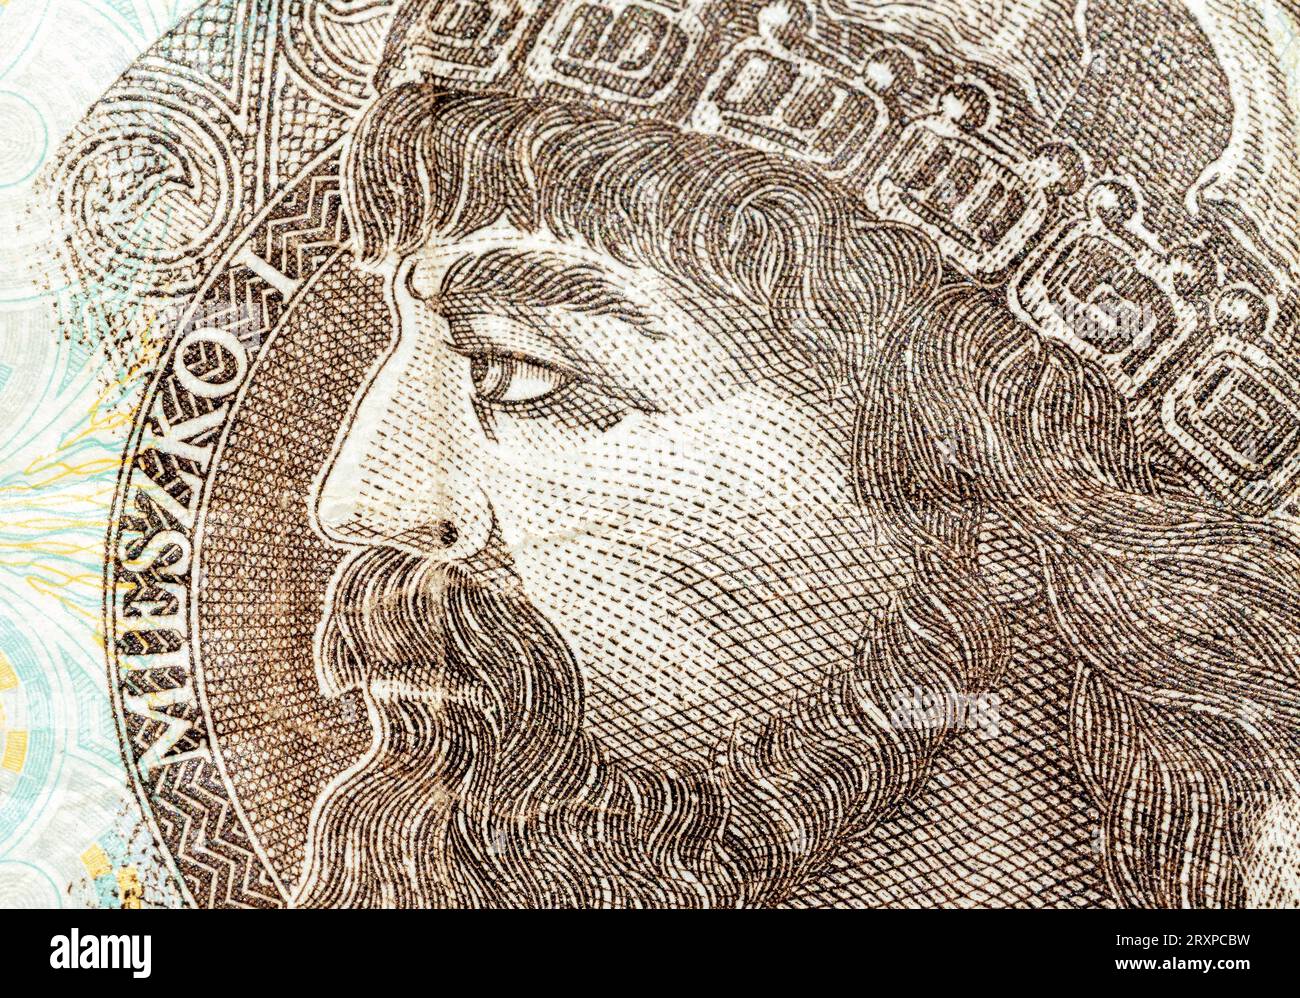 Il re polacco Mieszko i su una banconota da 10 zl e 10 zloty, dettaglio macro, primo piano estremo, ritratto, faccia da vicino. Polonia, storia polacca, cultura Foto Stock